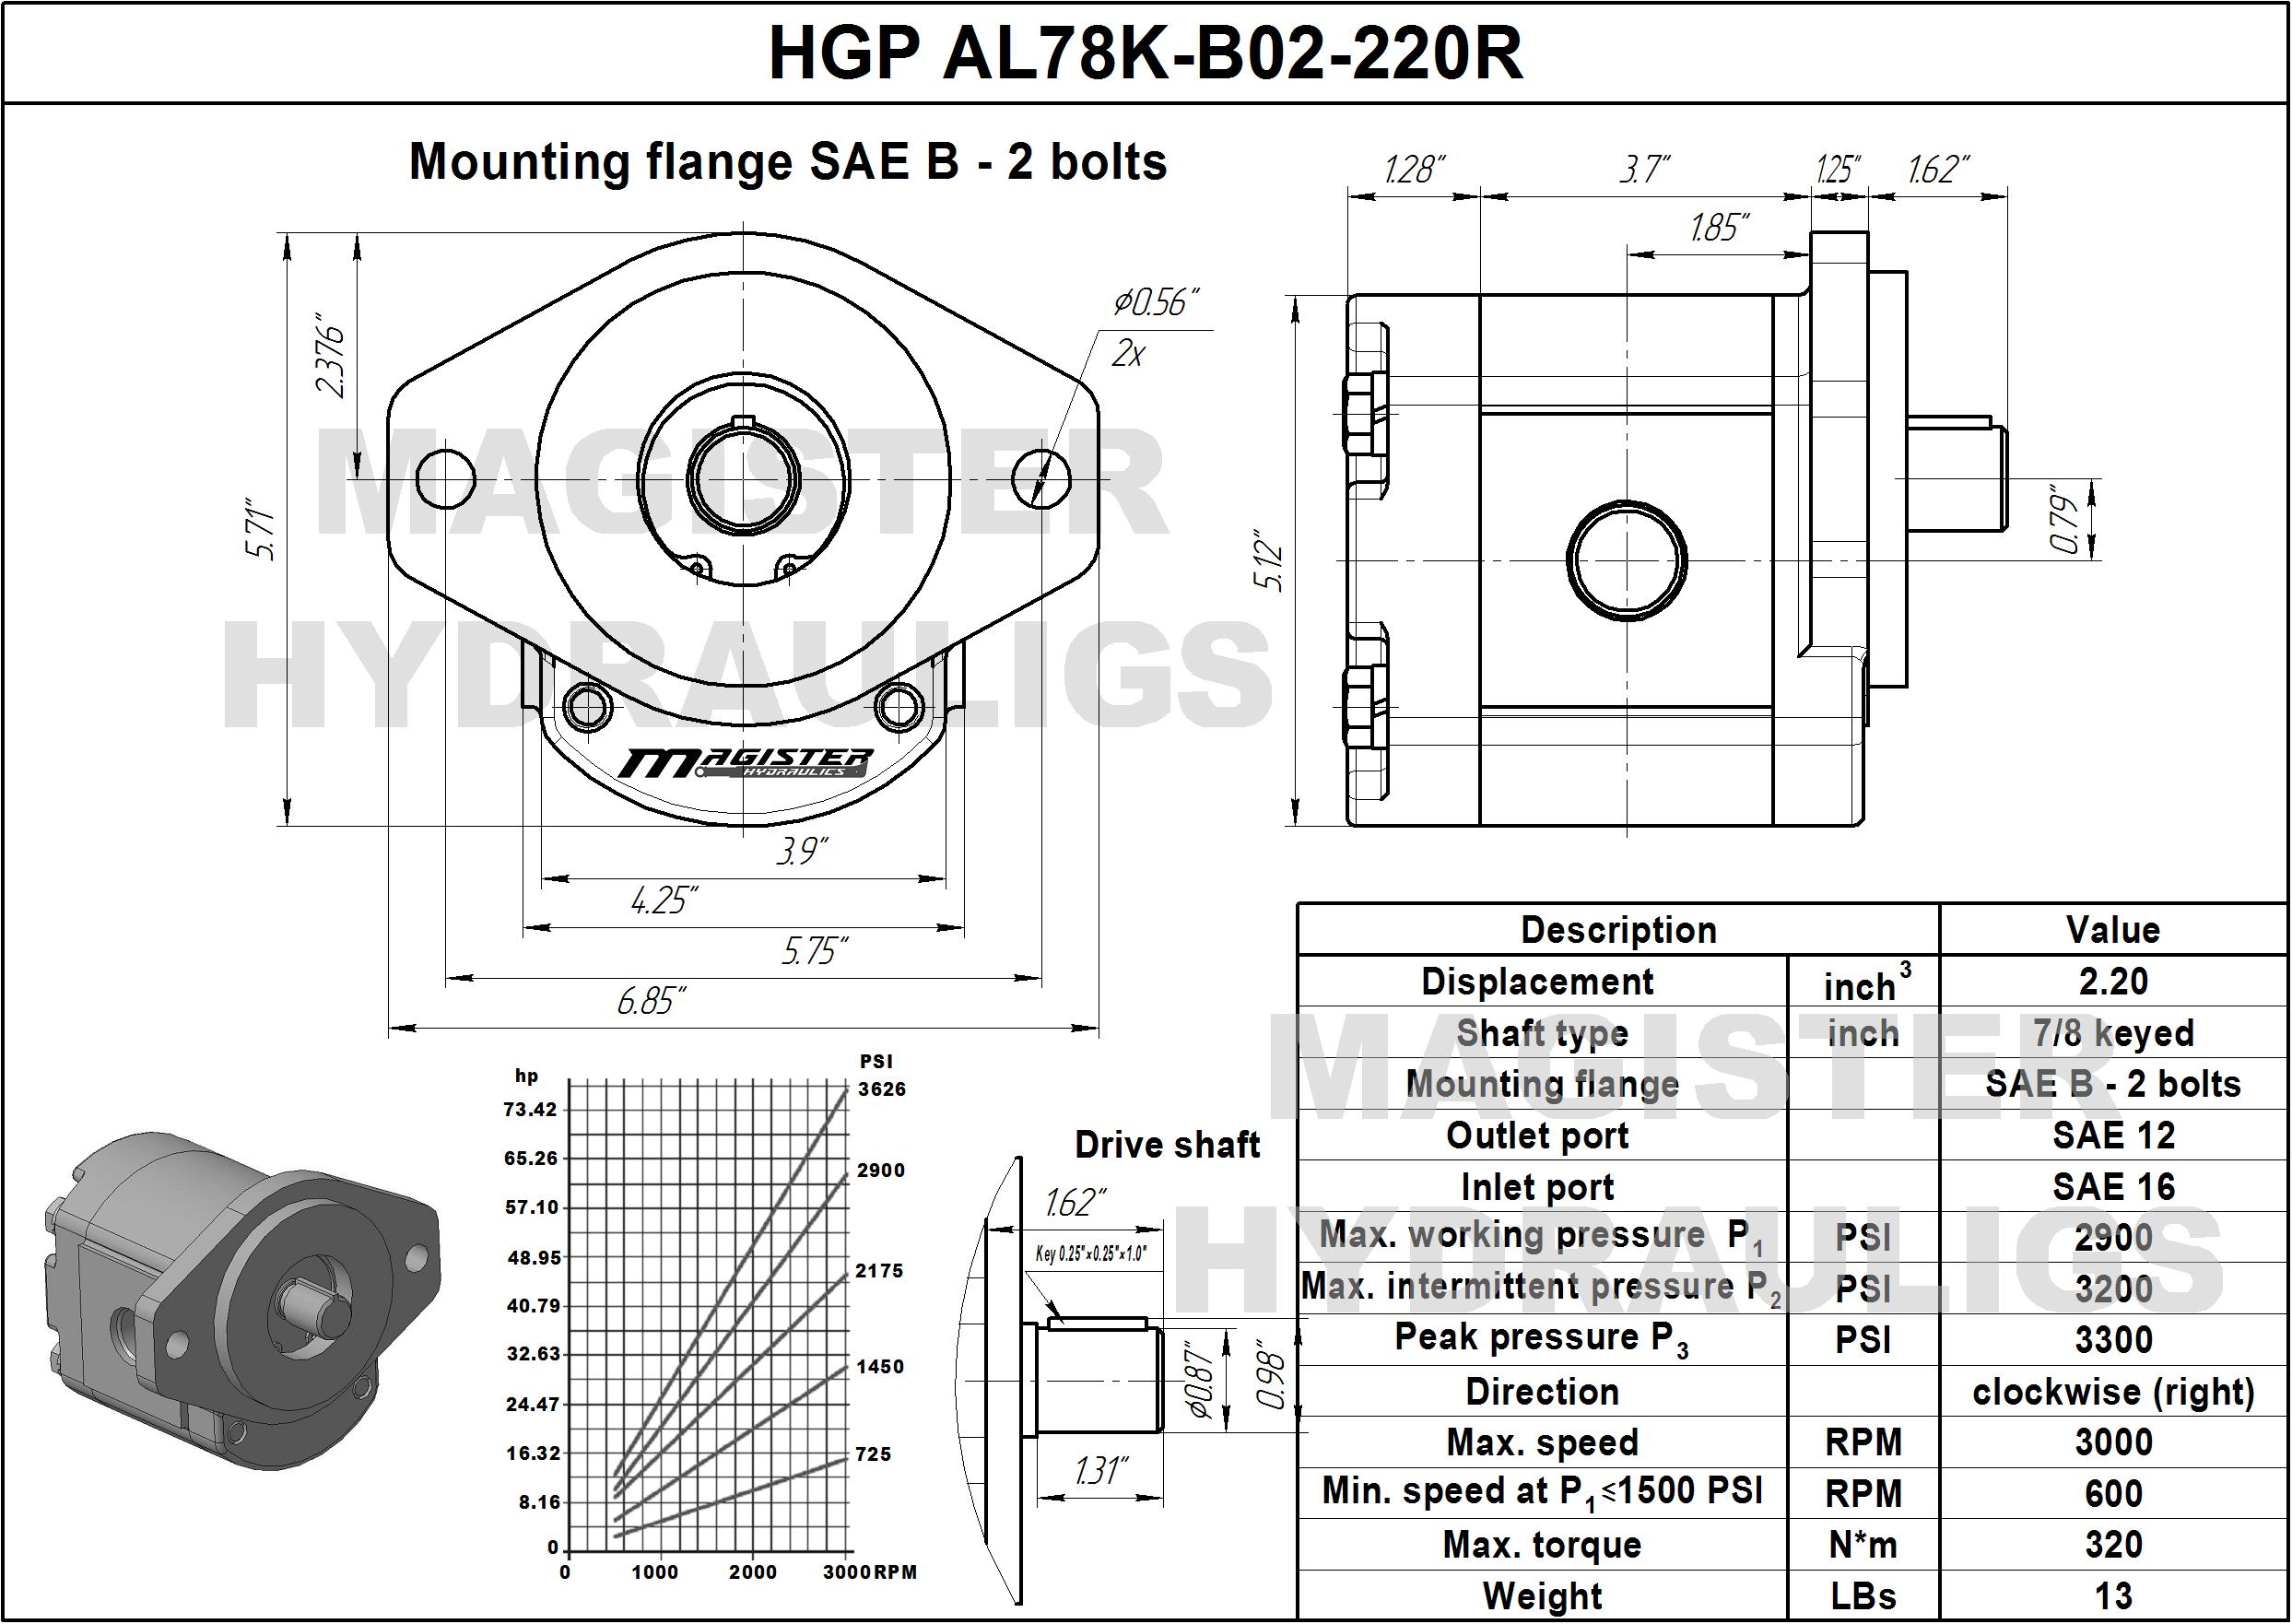 2.20 CID hydraulic gear pump, 7/8 keyed shaft clockwise gear pump | Magister Hydraulics